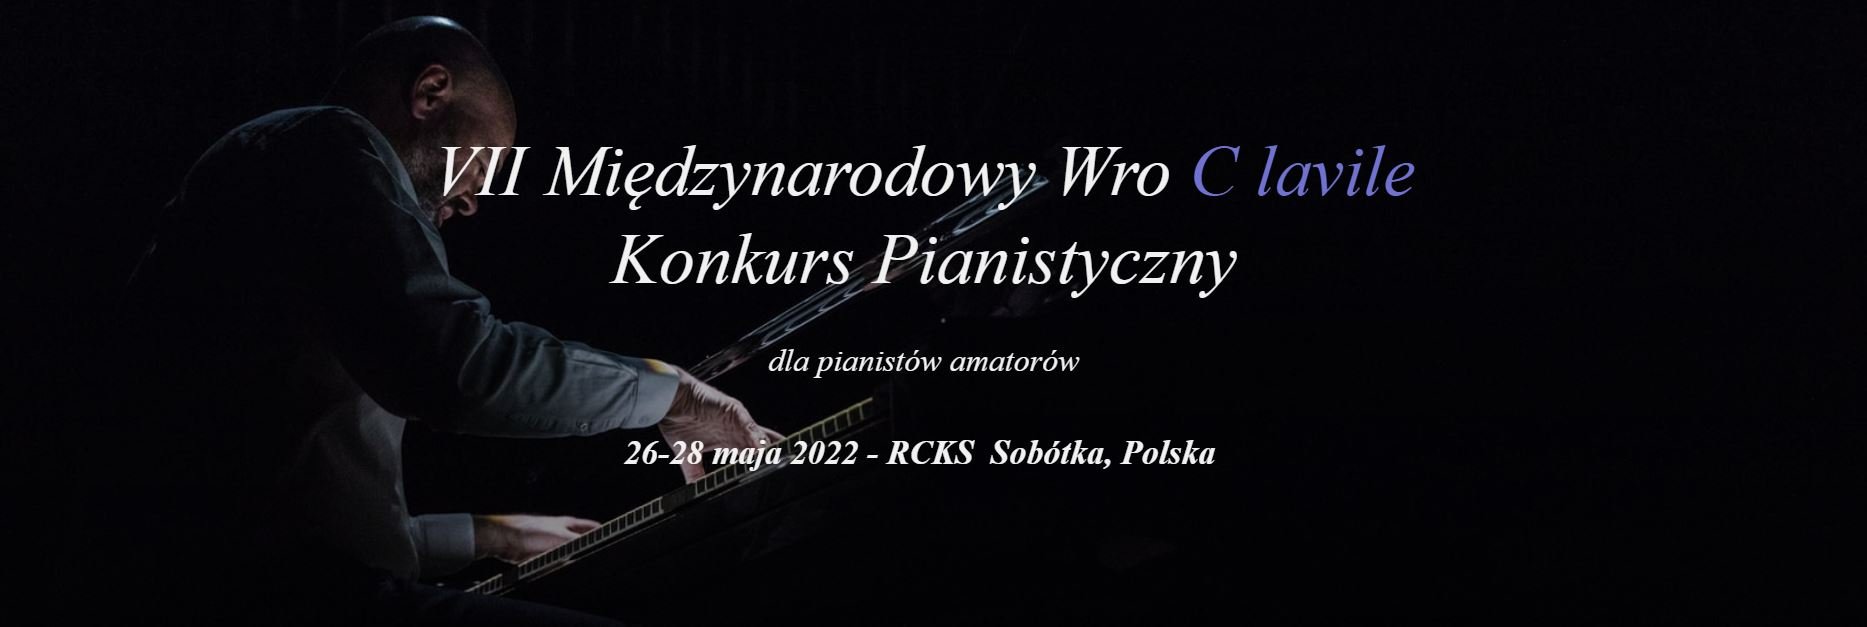 VII Międzynarodowy WroClavile - Konkurs Pianistyczny dla pianistów amatorów